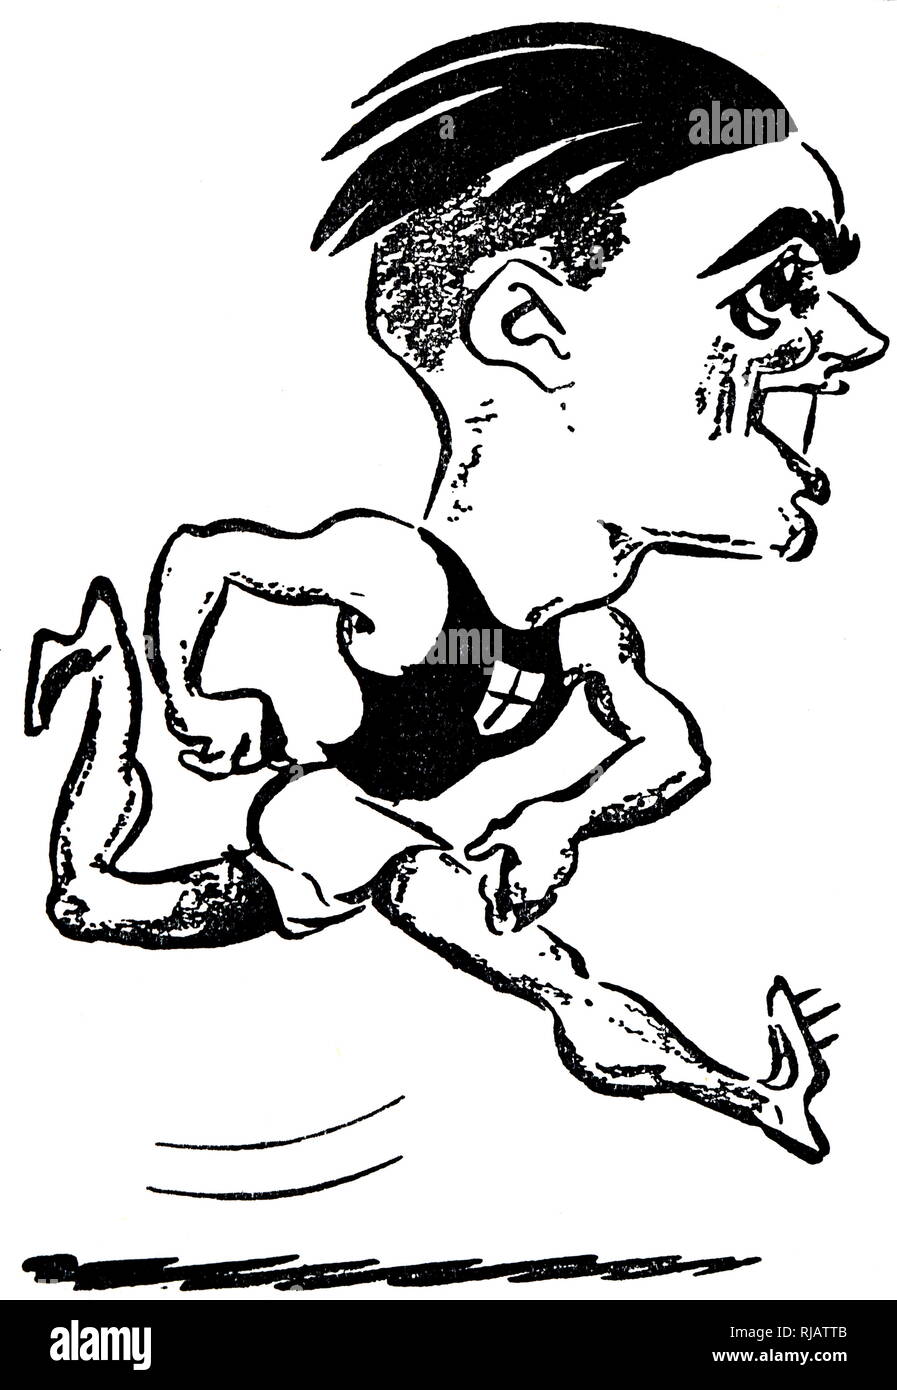 Disegno animato di un atleta italiano Luigi Beccali durante il 1932 giochi olimpici. Beccali fu il primo italiano a vincere la medaglia d'oro nel 1500 metri in esecuzione evento. Foto Stock